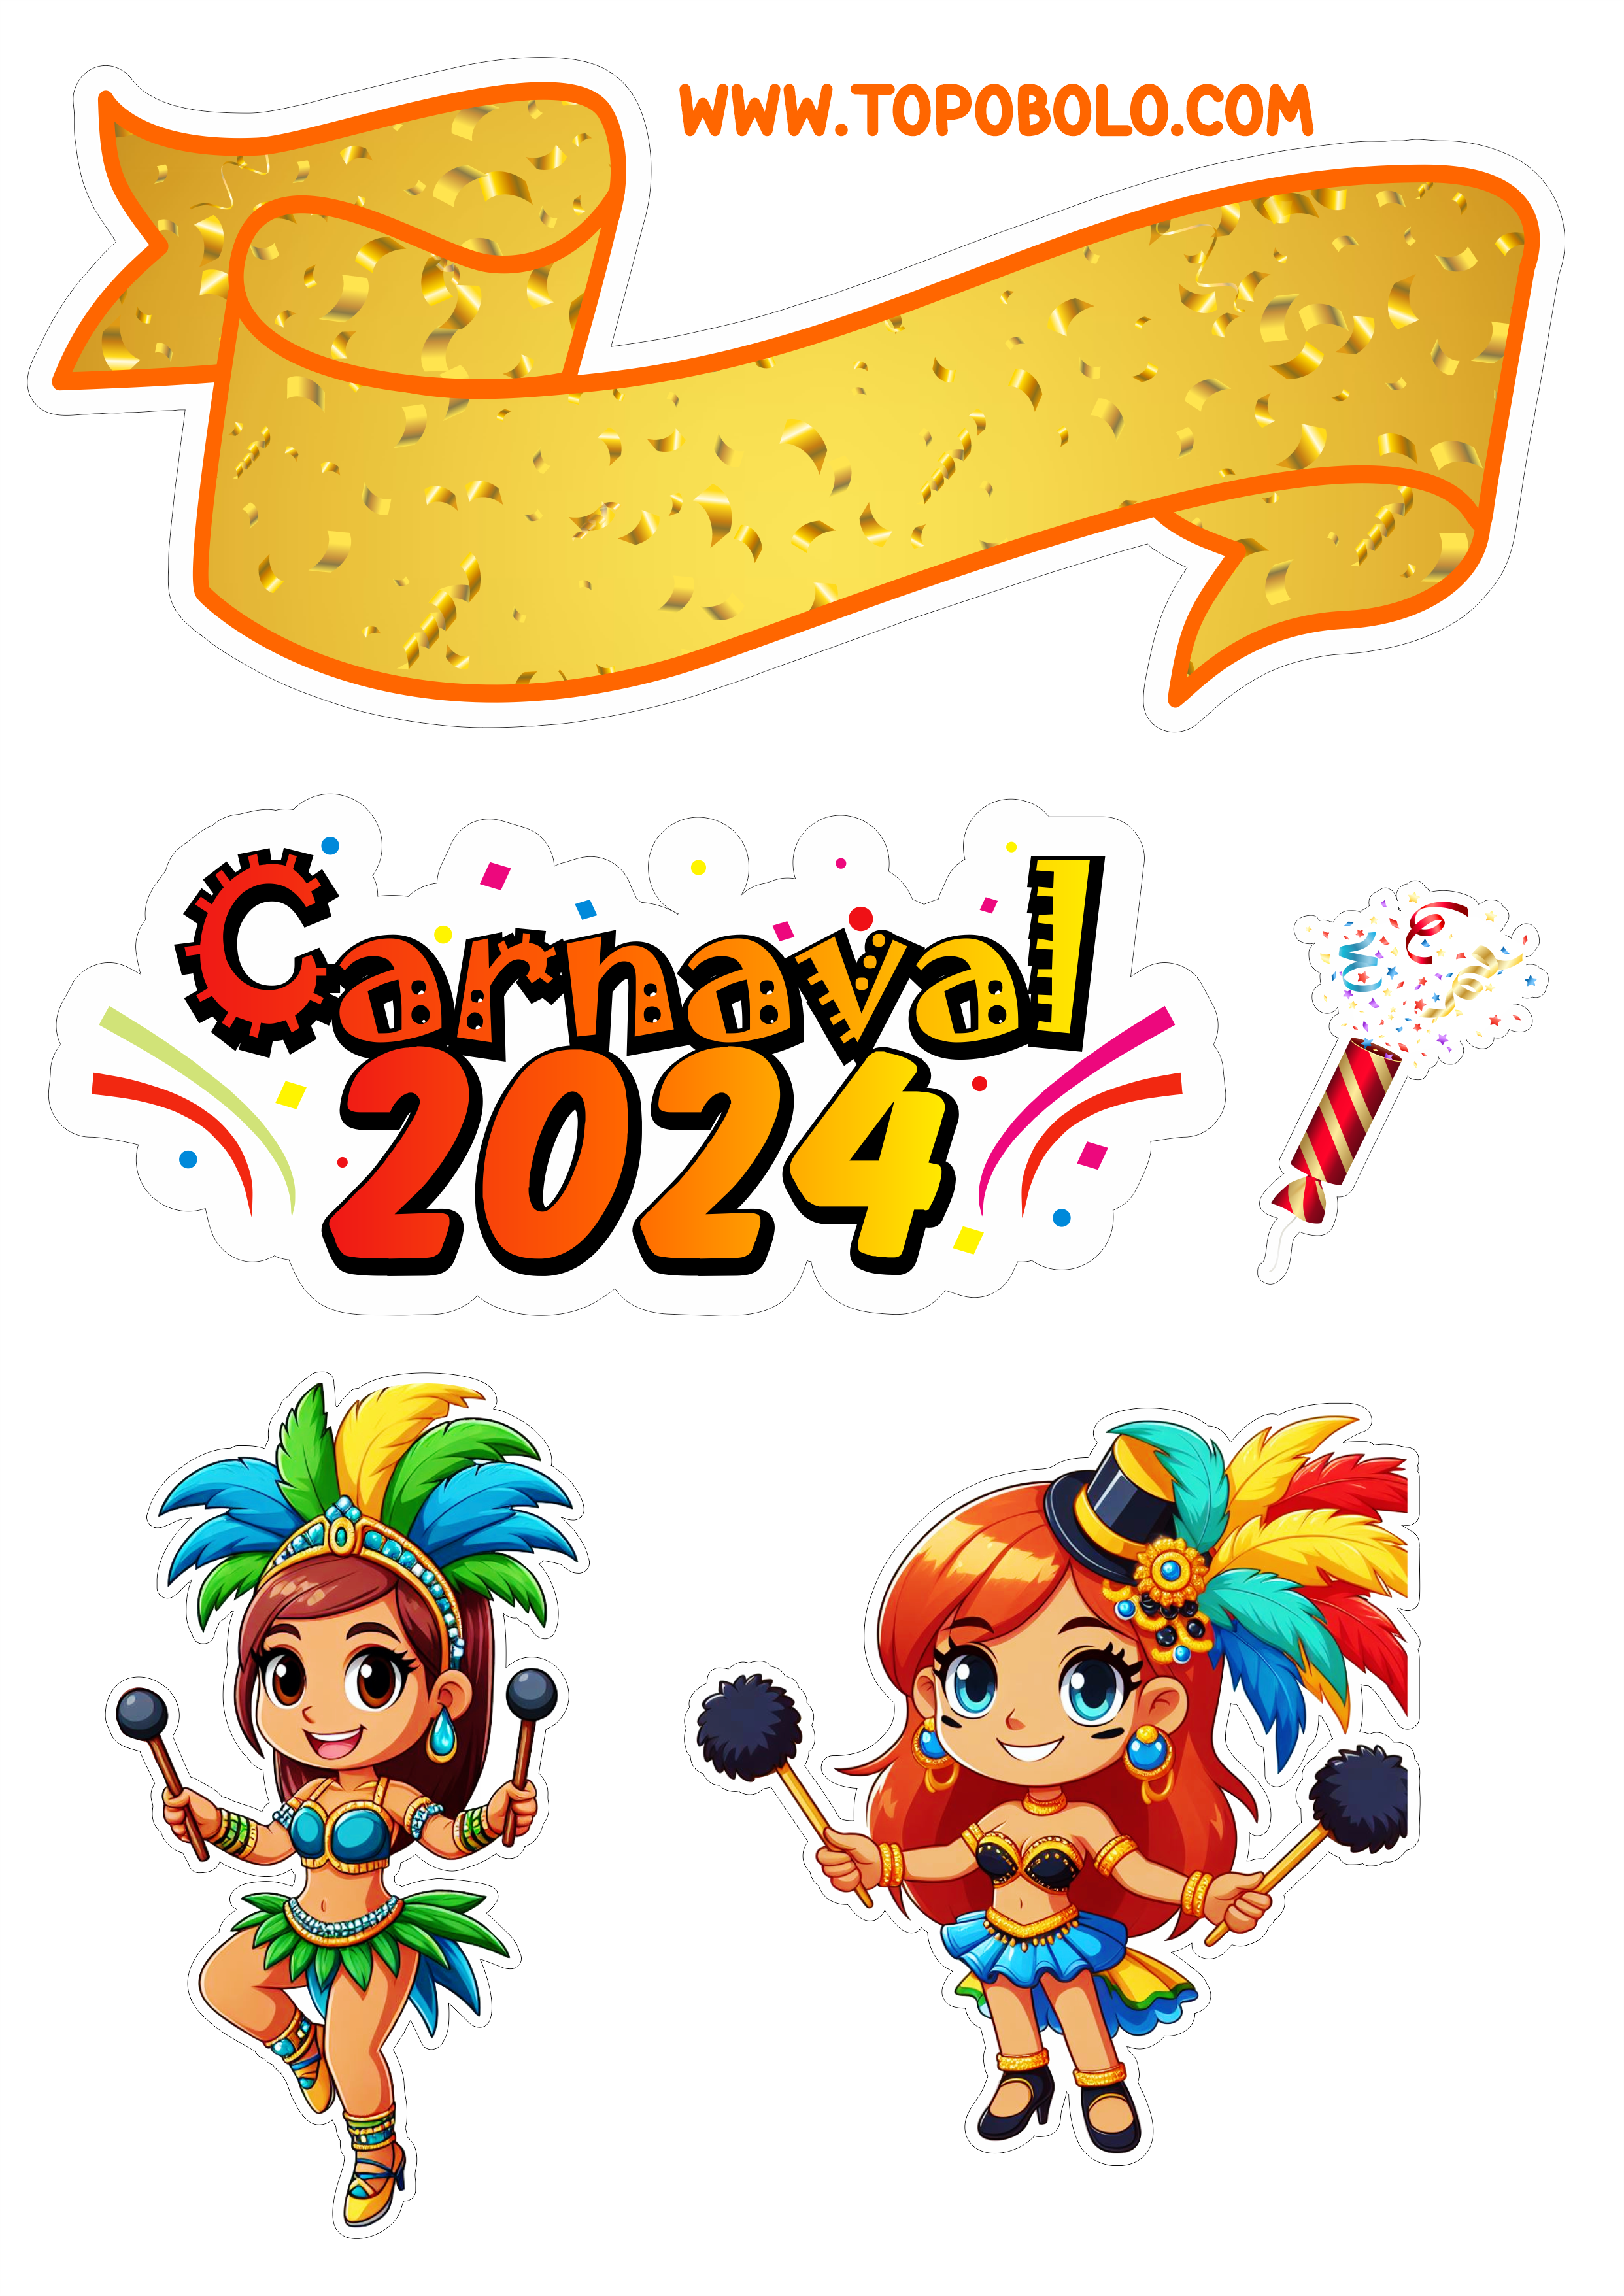 Topo de bolo carnaval 2024 decoração de aniversário baile de máscaras confete artes gráficas escola de samba png